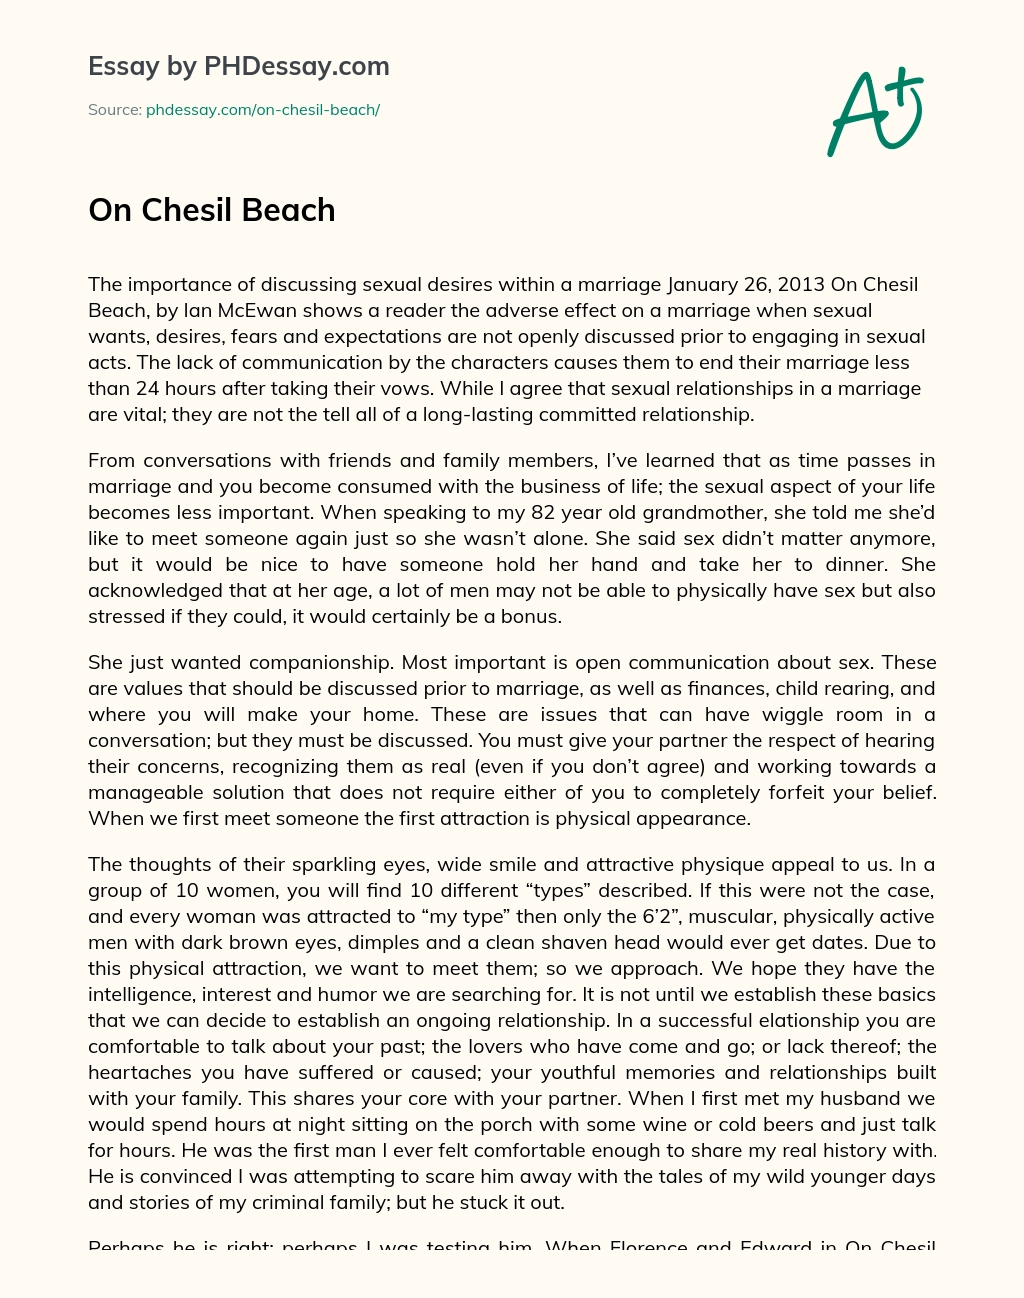 On Chesil Beach essay